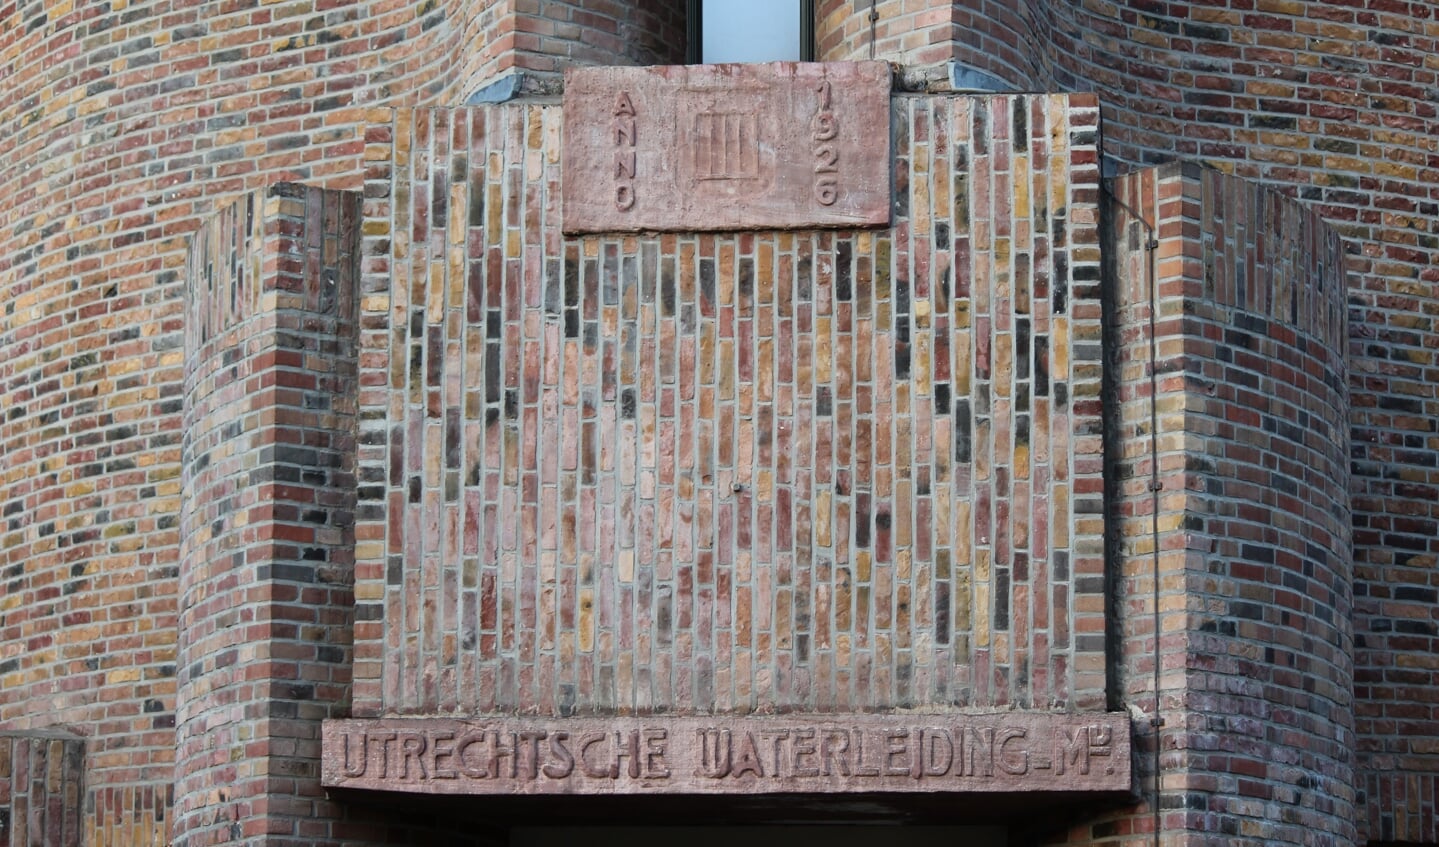 De toren is in 1926 gebouwd in opdracht van de Utrechtse Waterleiding Maatschappij getuige de fraaie gevelsteen boven de ingang.